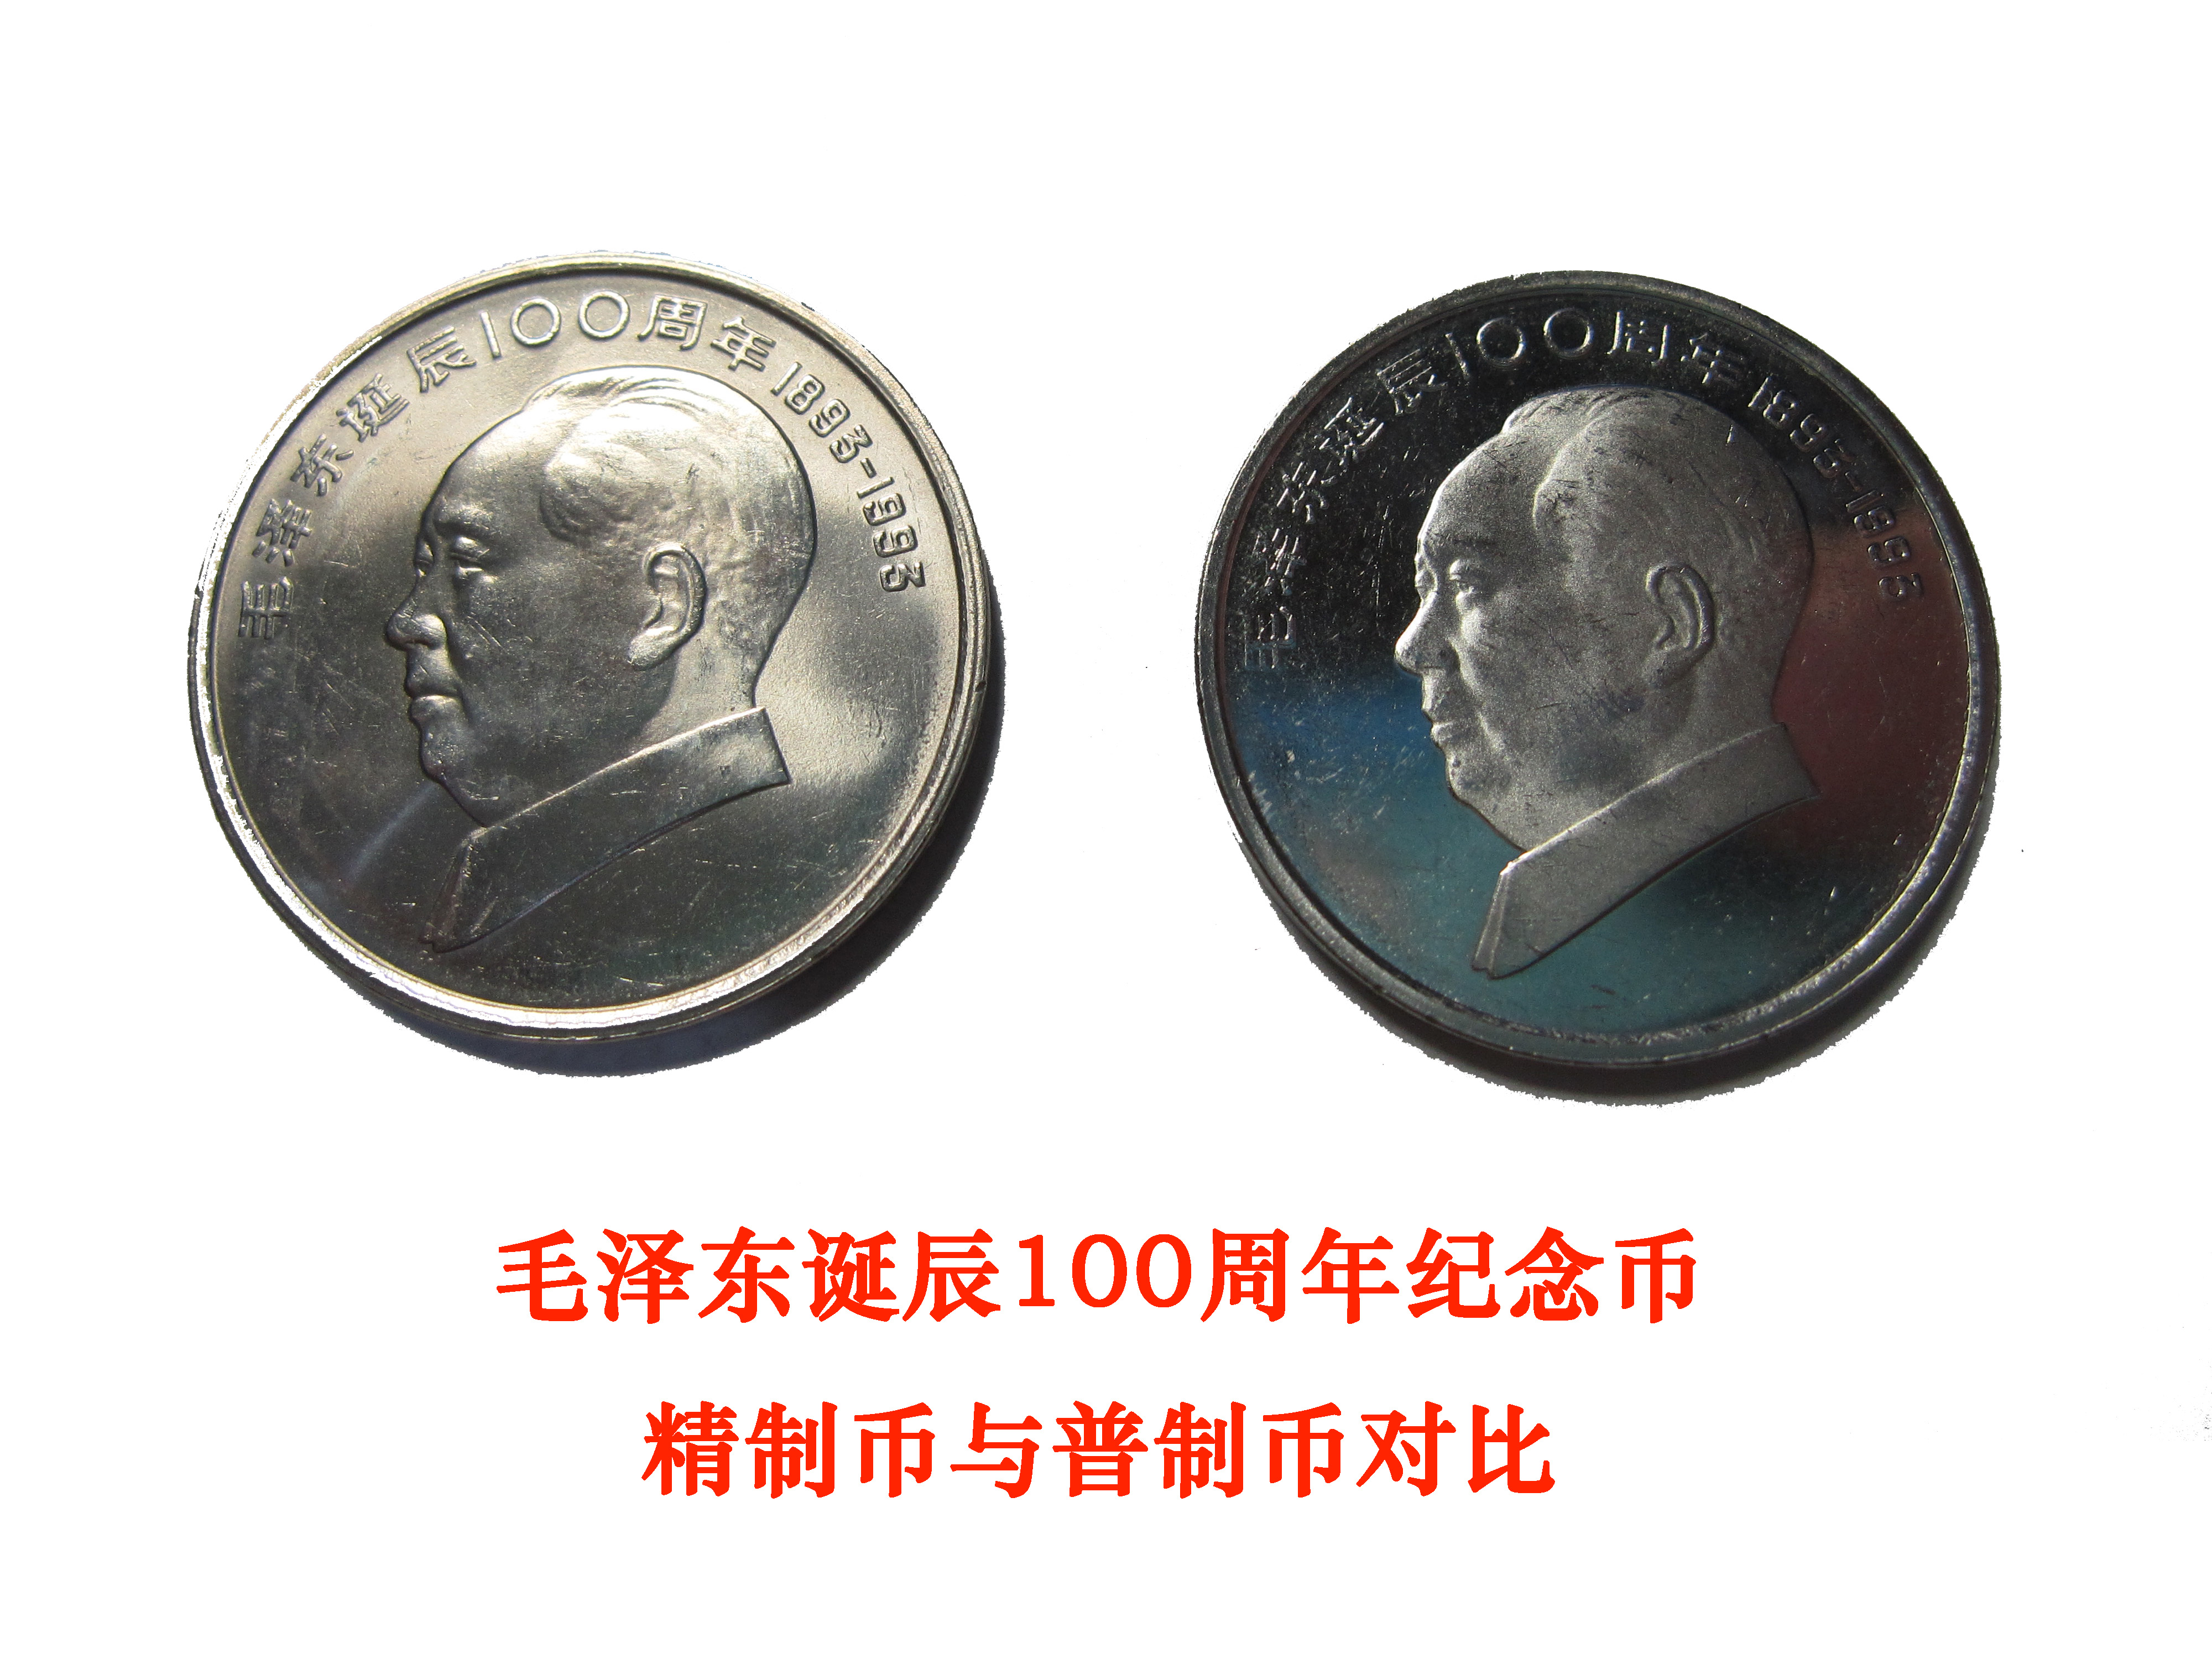 毛澤東紀念幣精製幣與普制幣對比